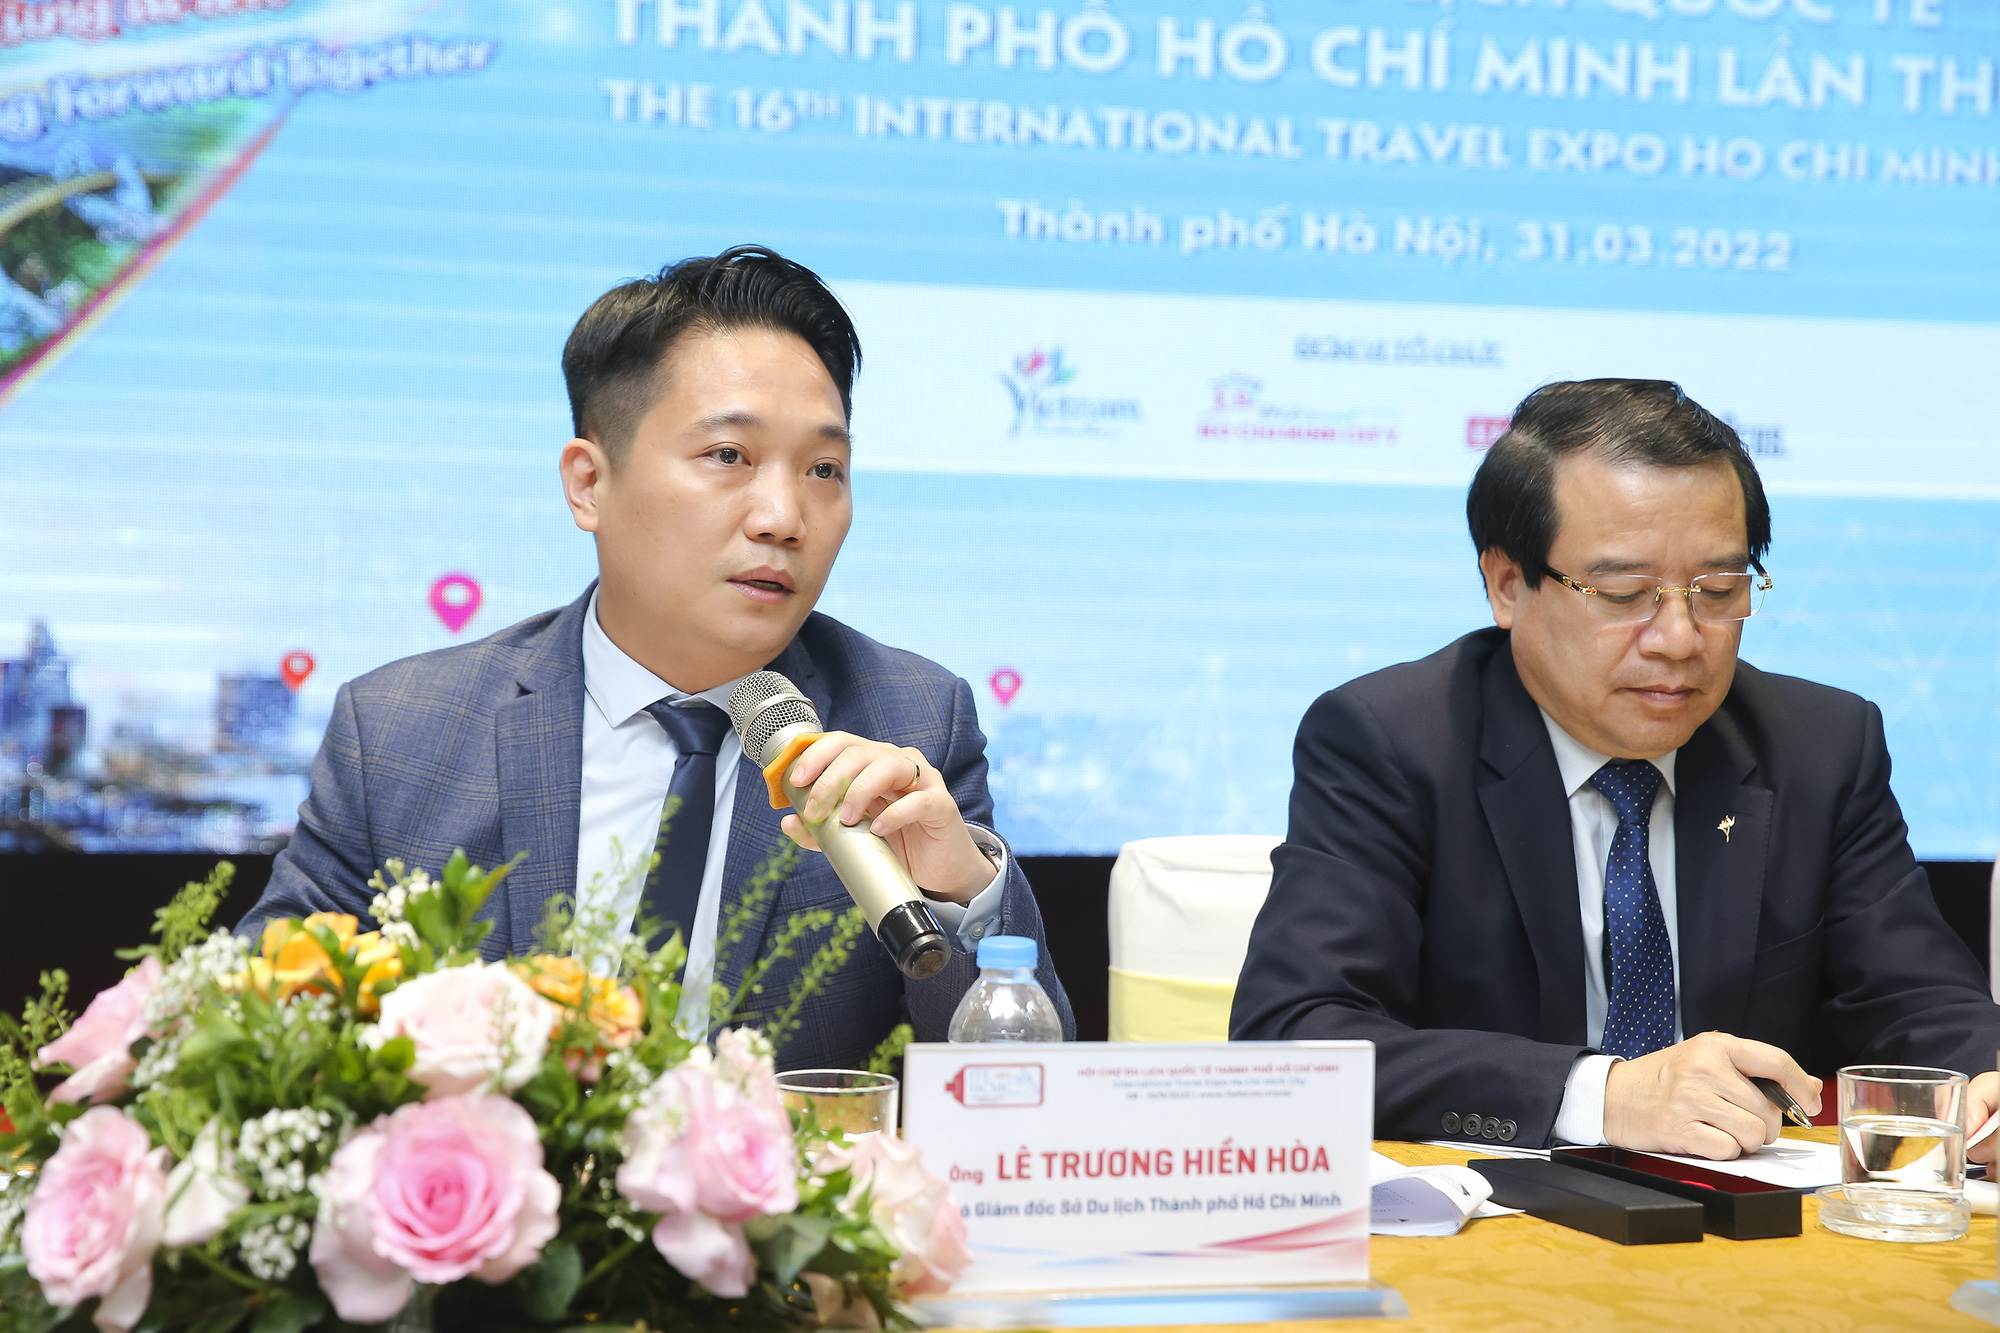 Hội chợ Du lịch Quốc tế Thành phố Hồ Chí Minh sẽ chính thức trở lại với chủ đề “Cùng vững bước, cùng đi lên” - Ảnh 2.